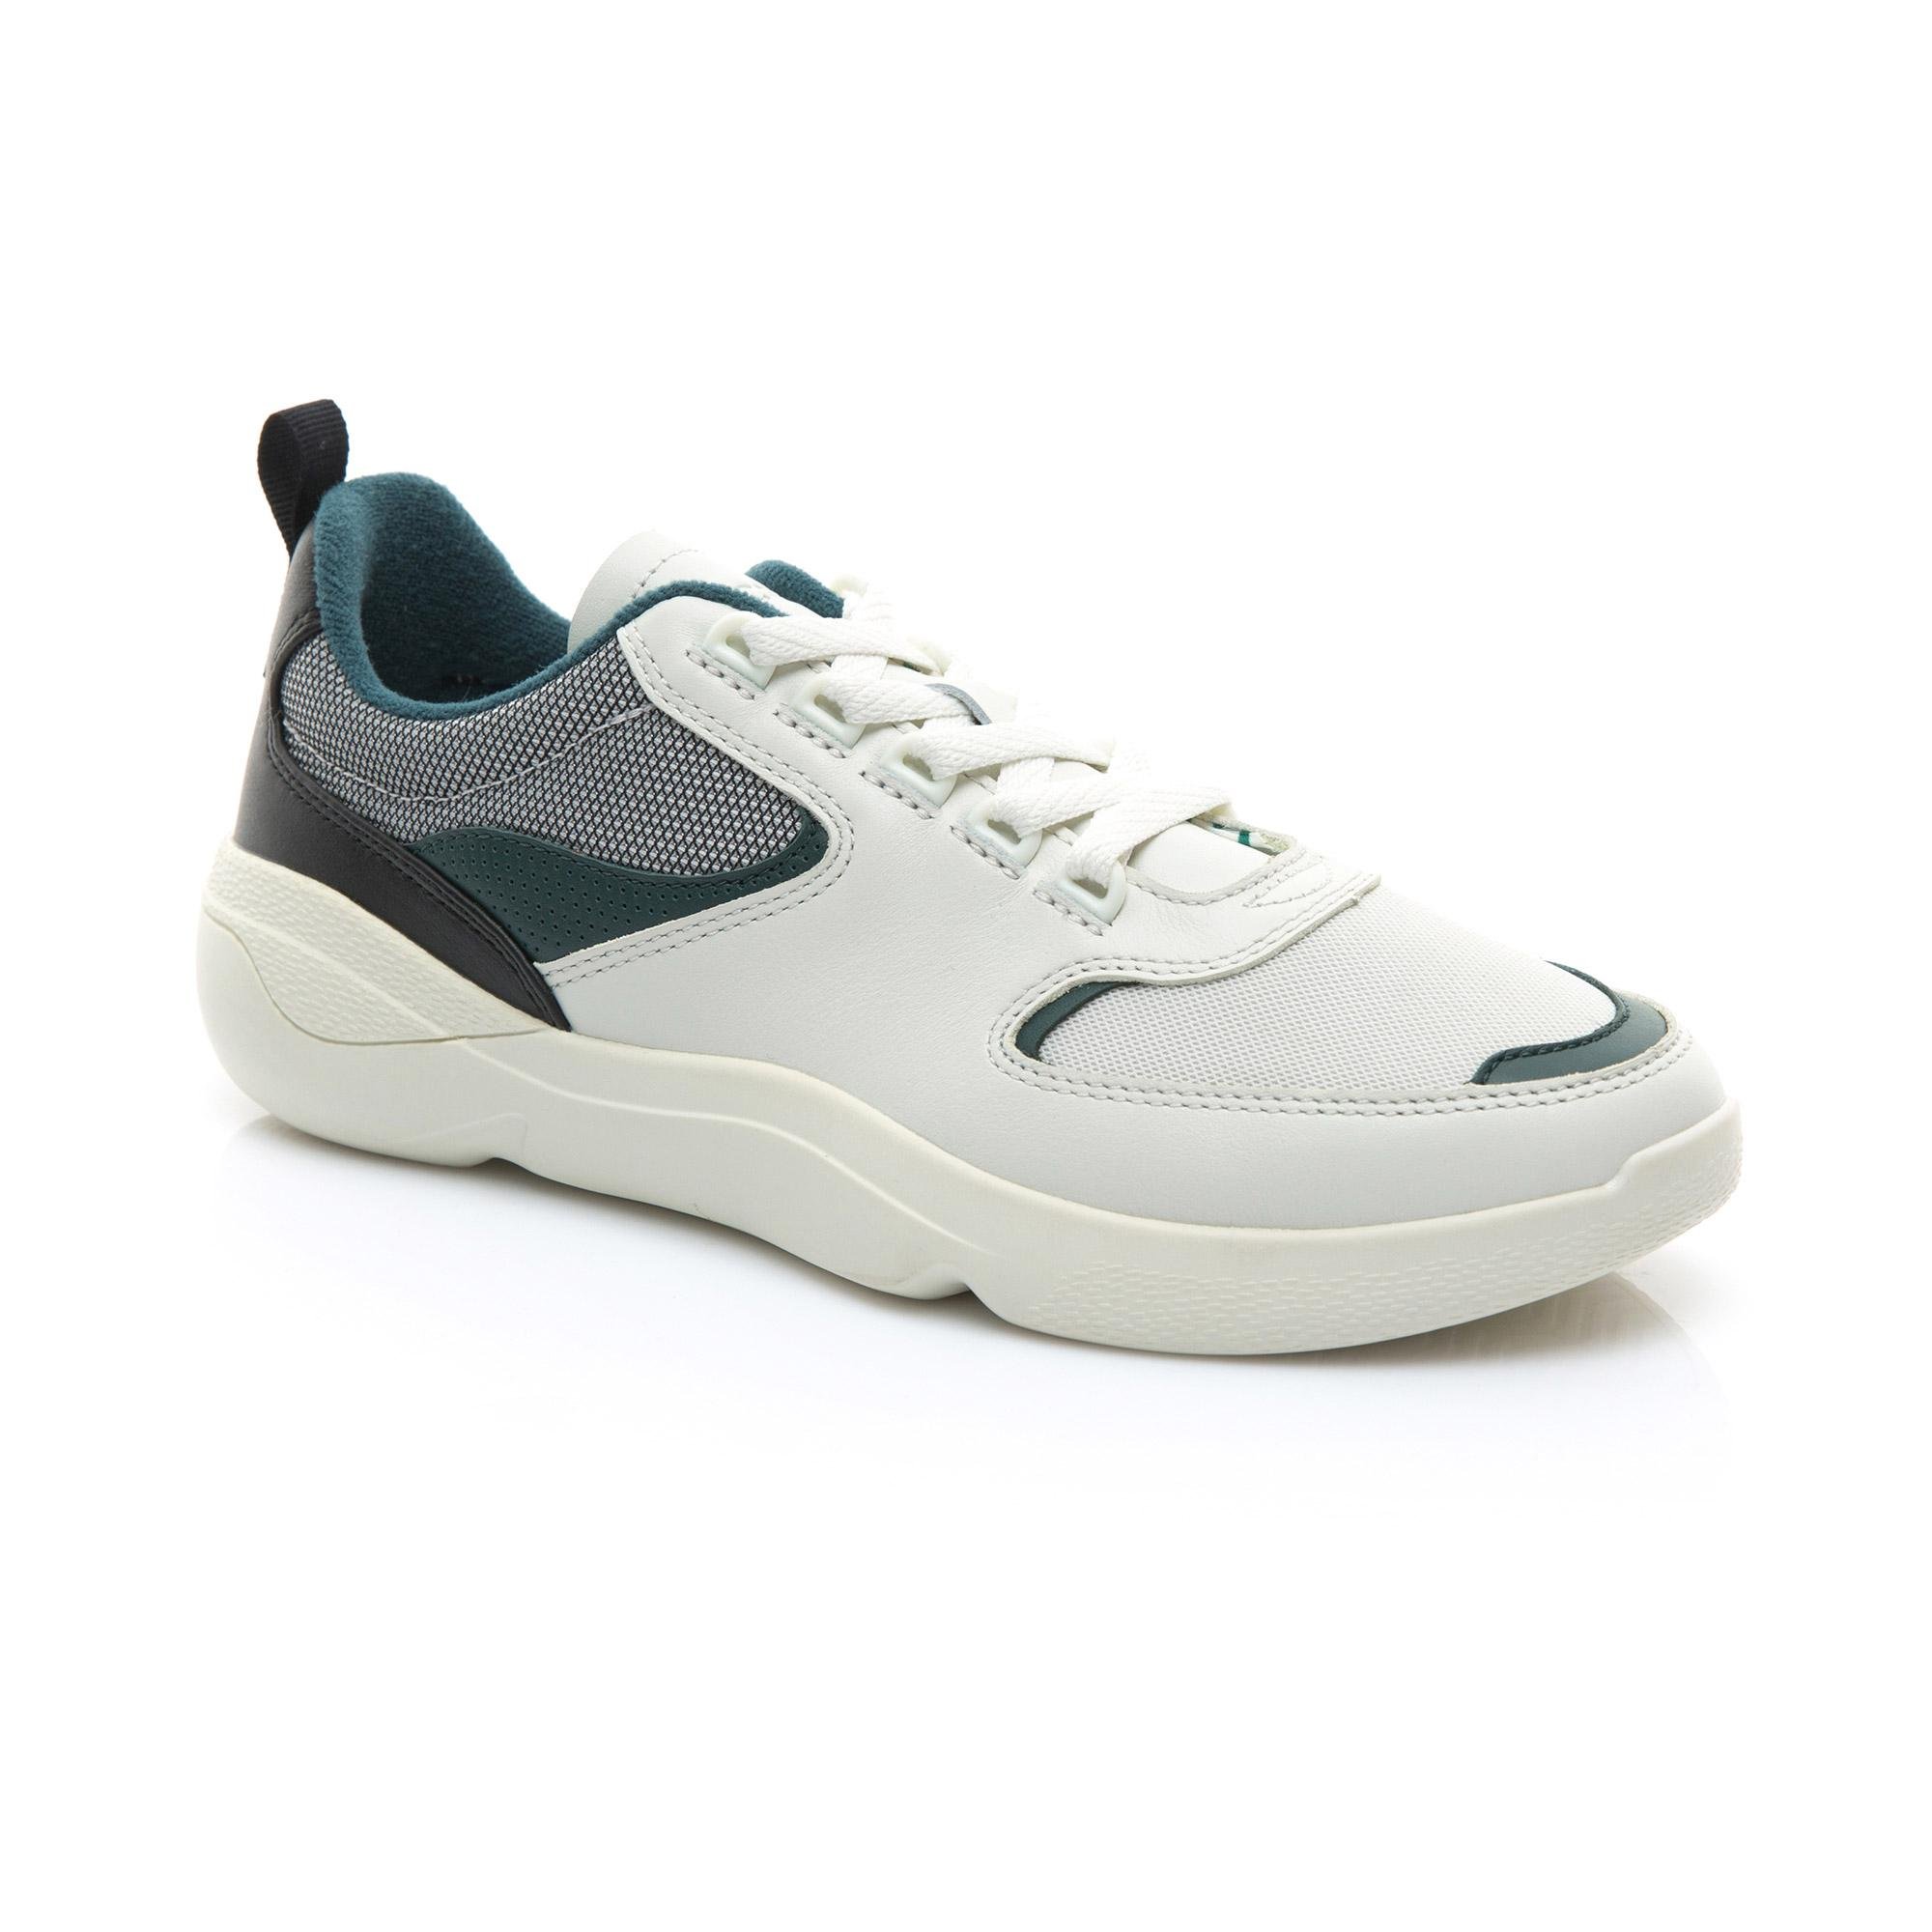 Lacoste WildCard 119 1 Men's Sneakers